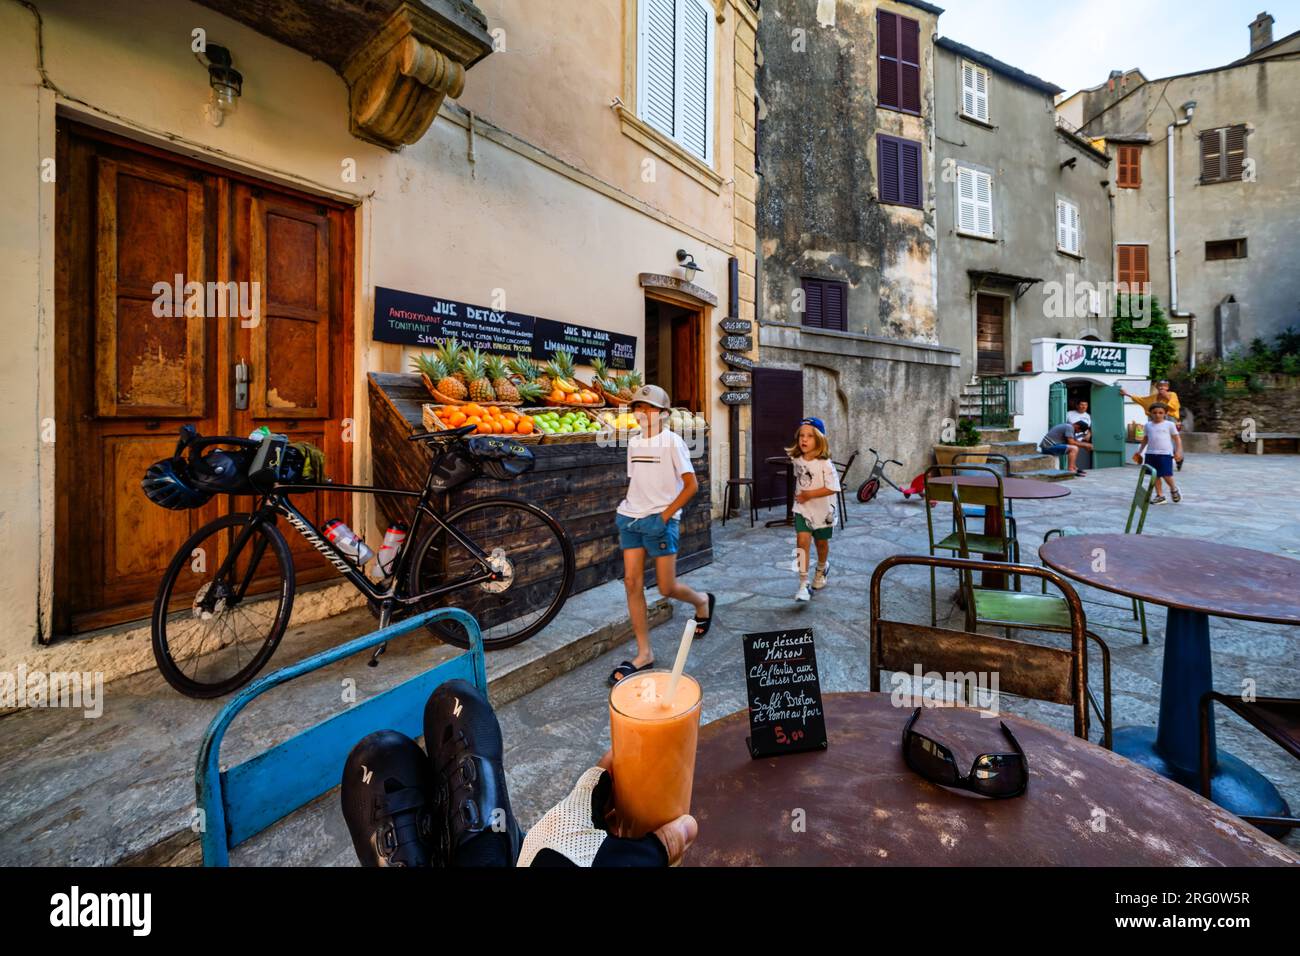 Al villaggio di Albo, isola della Corsica, Francia Foto Stock